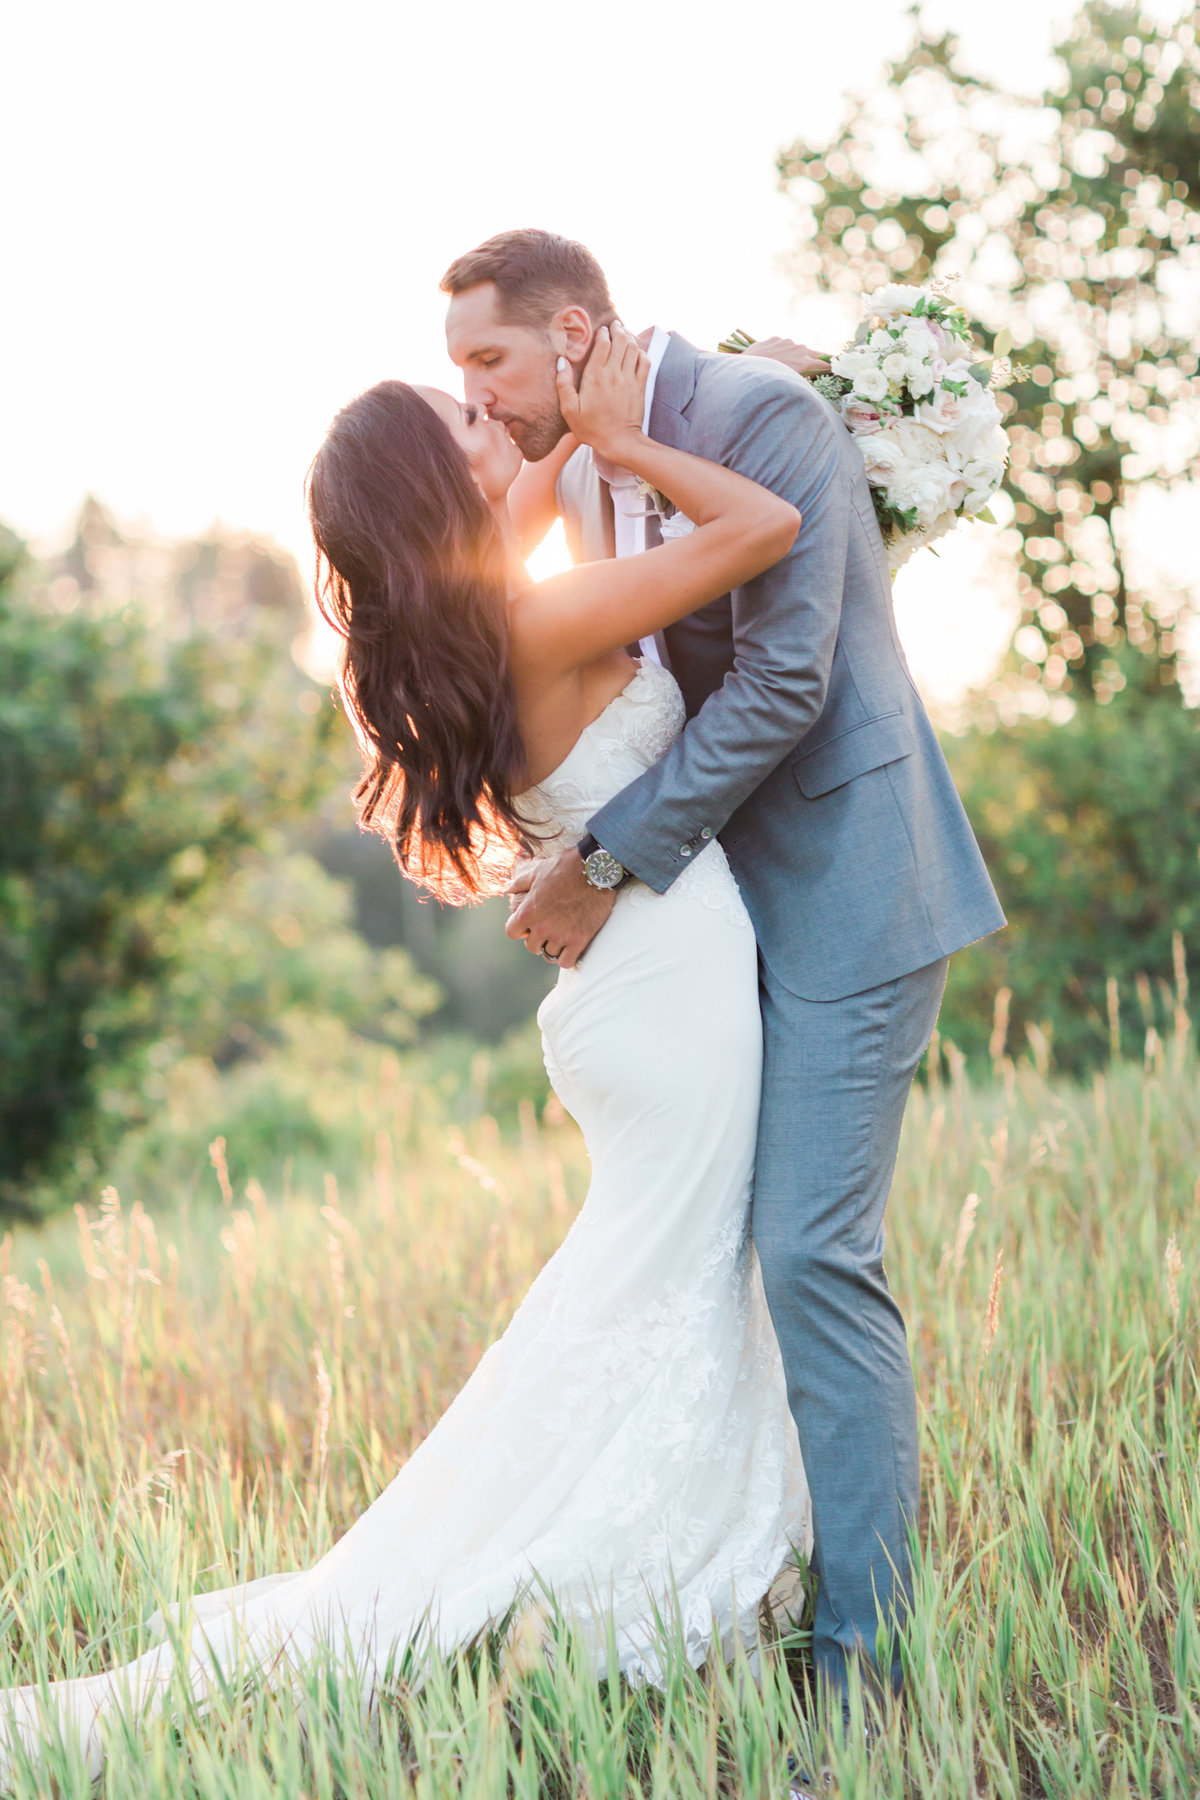 Kari_Ryan_Anderson_Colorado_Outdoor_Chapel_Wedding_Valorie_Darling_Photography - 116 of 126